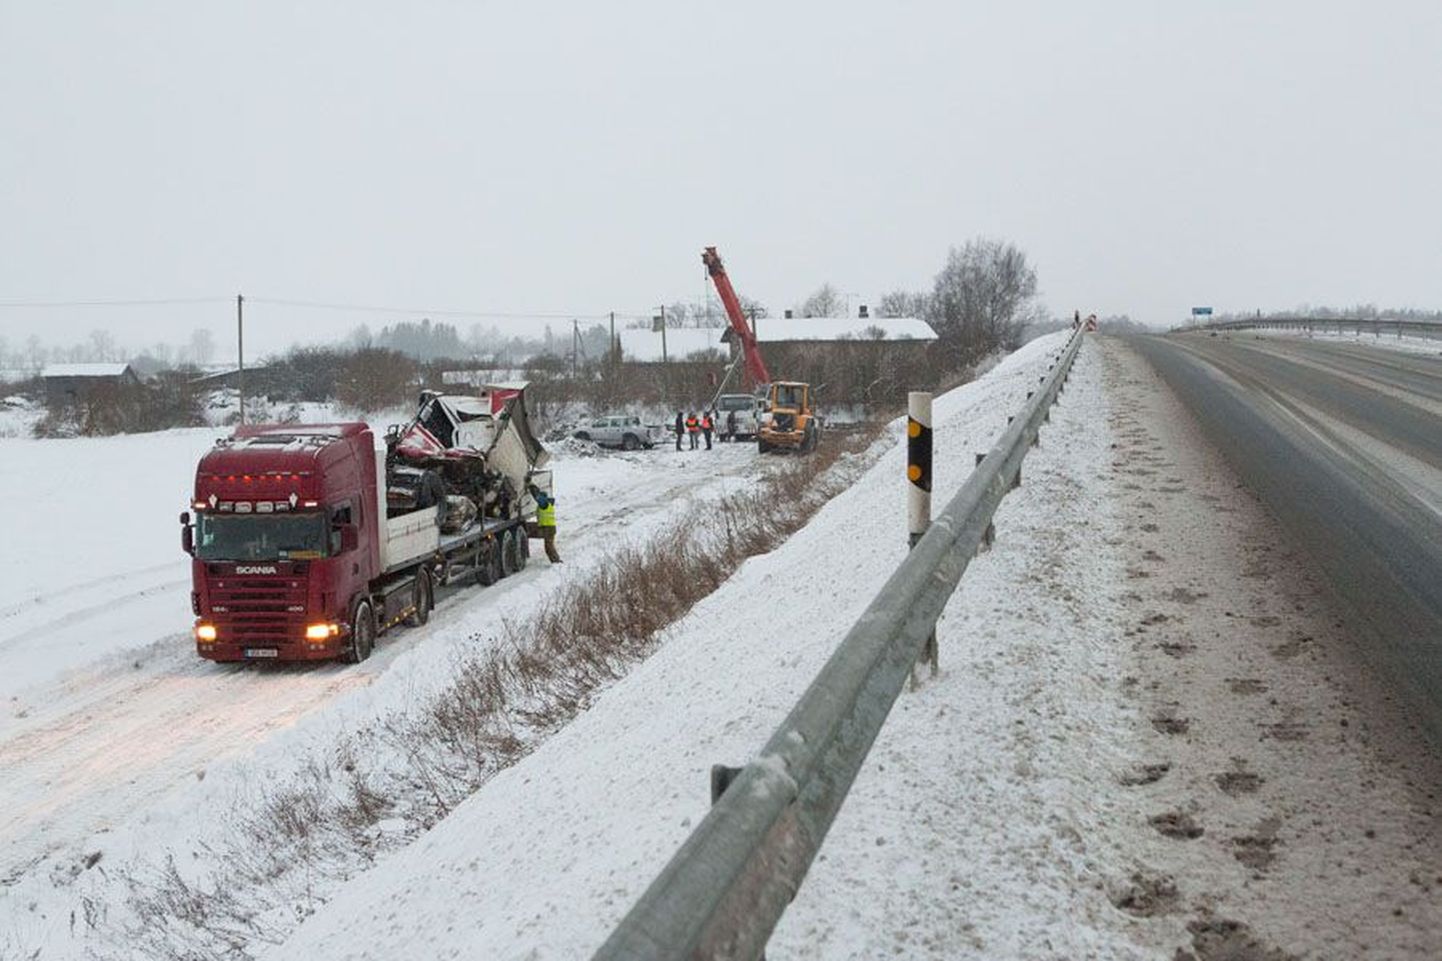 Esmaspäeva õhtul Aluvere viaduktil juhtunud üliraske liiklusõnnetuse tagajärjel purunes ka teepiire. Liiklejatel tuleb viadukti ületades olla ettevaatlik.